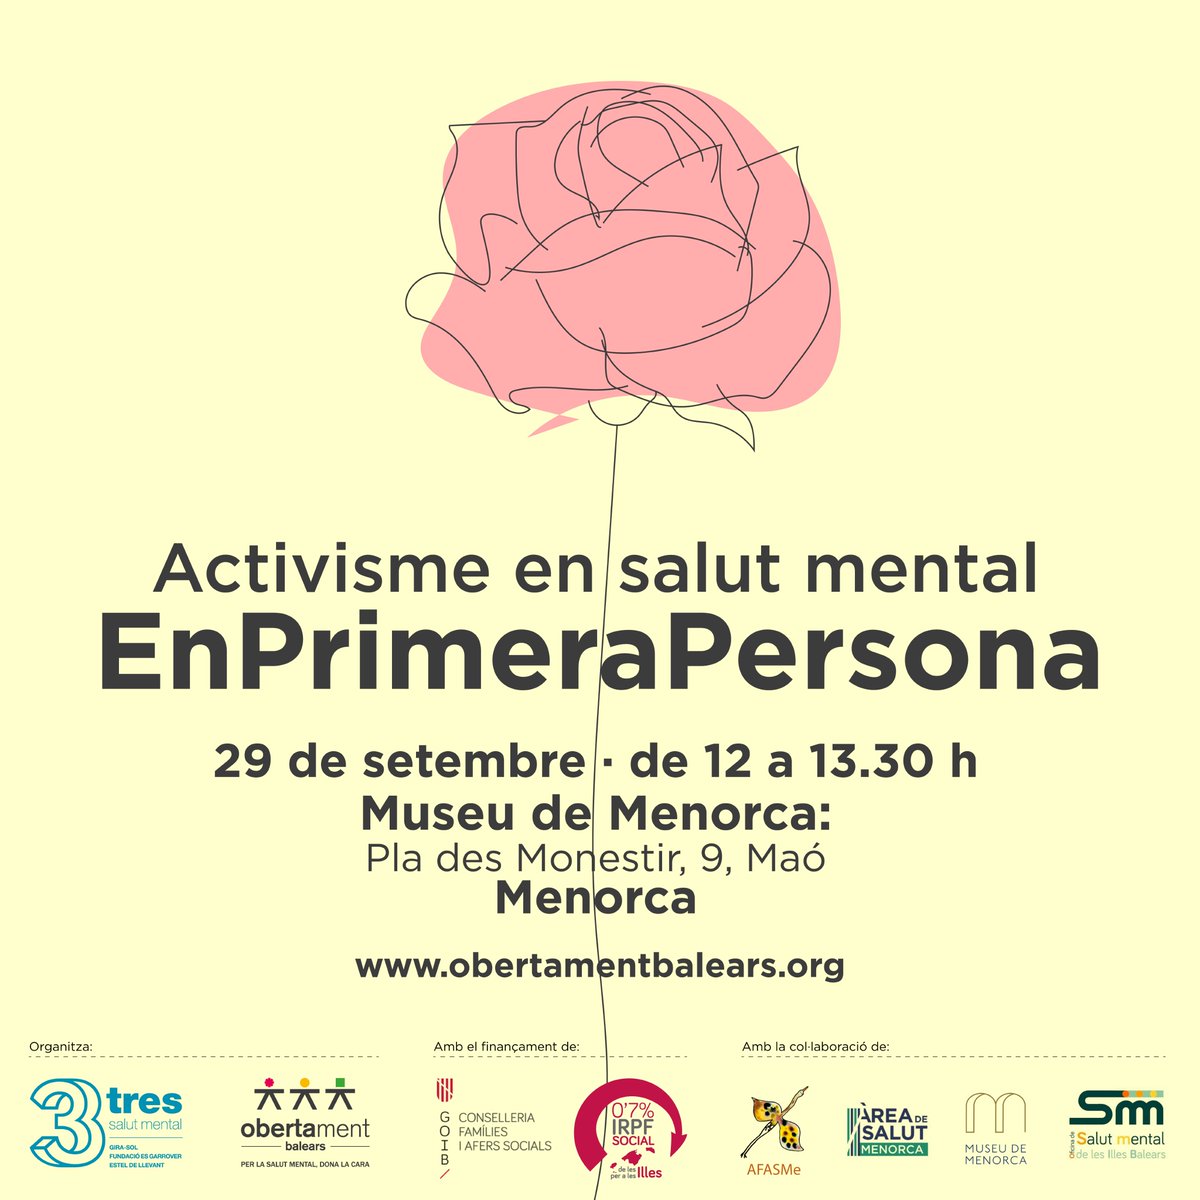 Si vius a Menorca i vols conèixer millor el programa #ObertamentBalears, t'esperam el dia 29 al Museu de Menorca!
#NoEstigma #SalutMental #EnPrimeraPersona @GOIB_Social #IRPFsocial #AFASMe @OSMIB_IBSalut